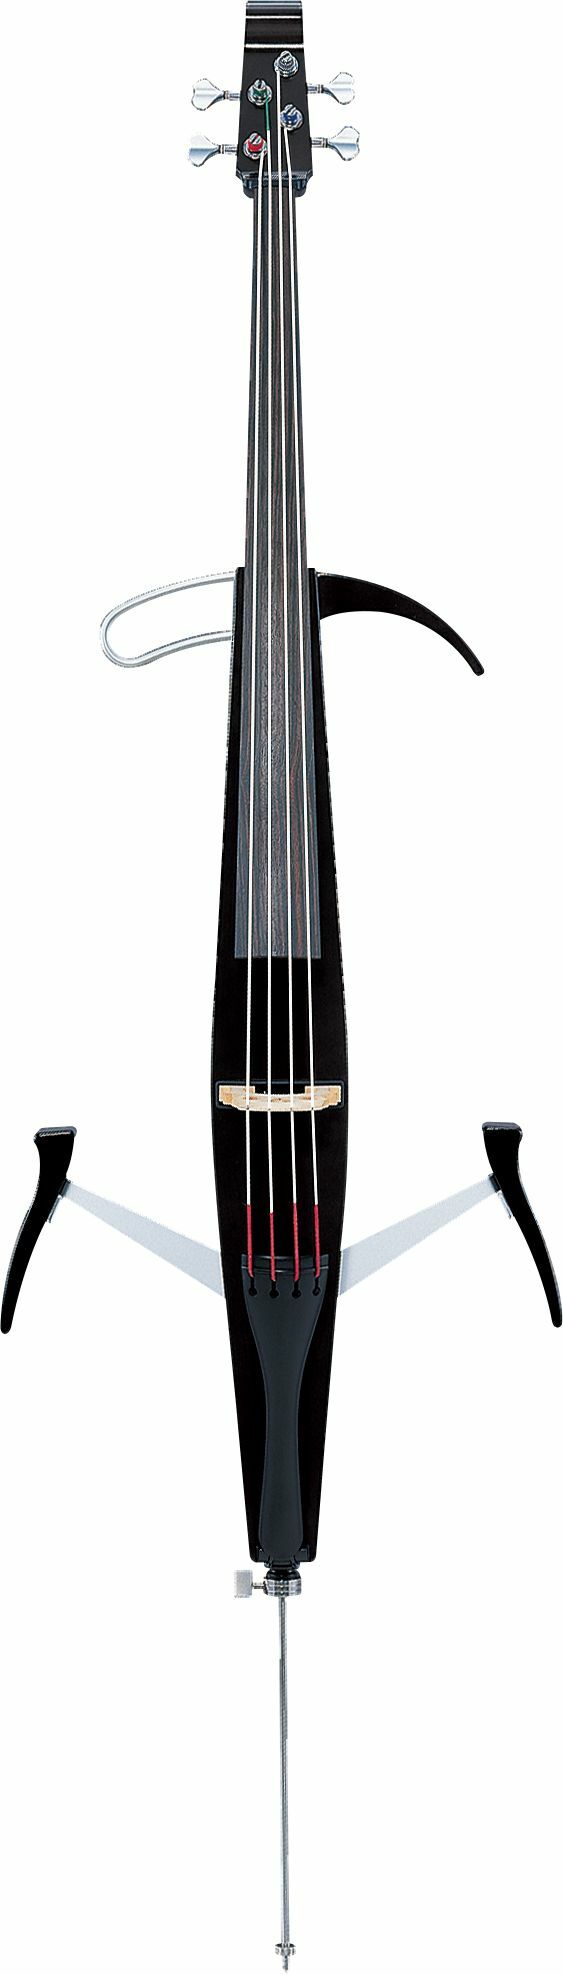 Yamaha Svc-50 Silent Cello - Elektrische cello - Main picture